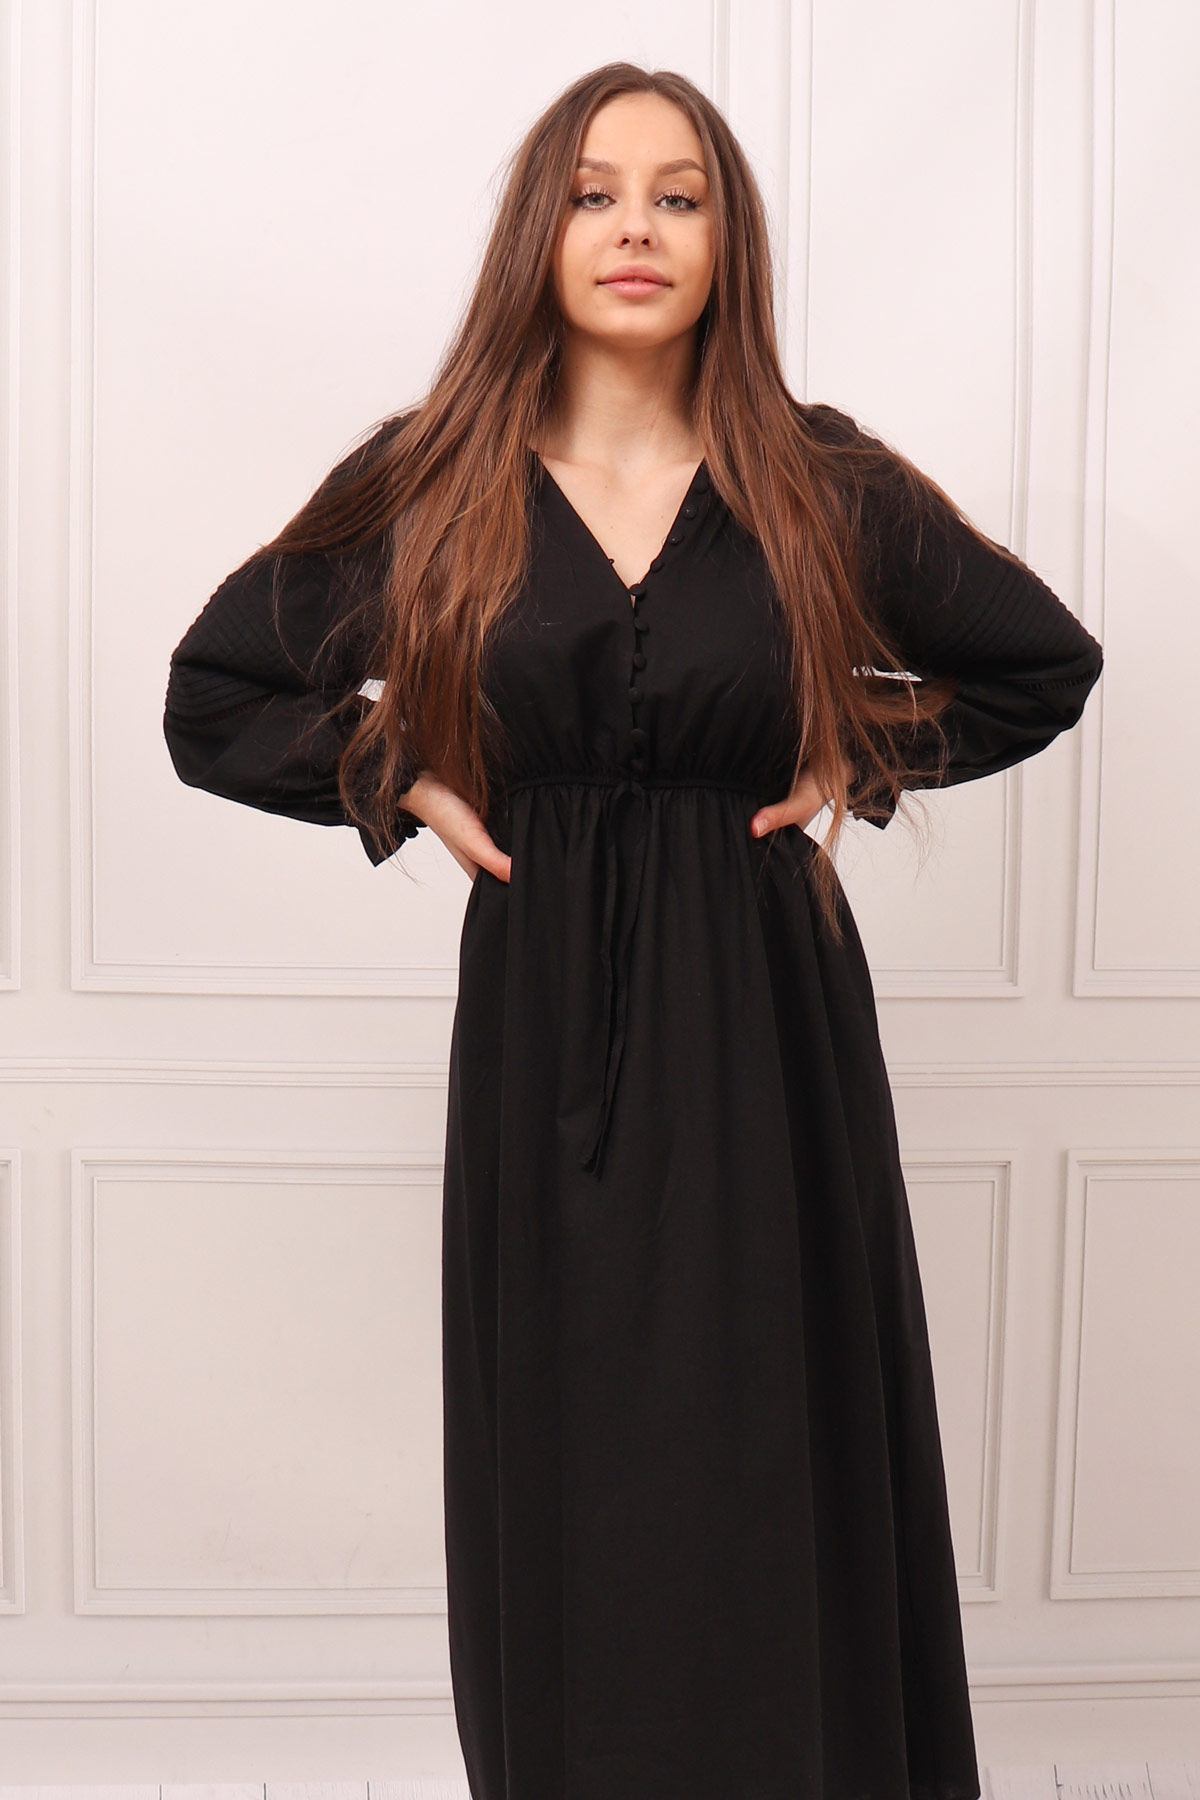 Czarna sukienka maxi koszulowa guziki boho